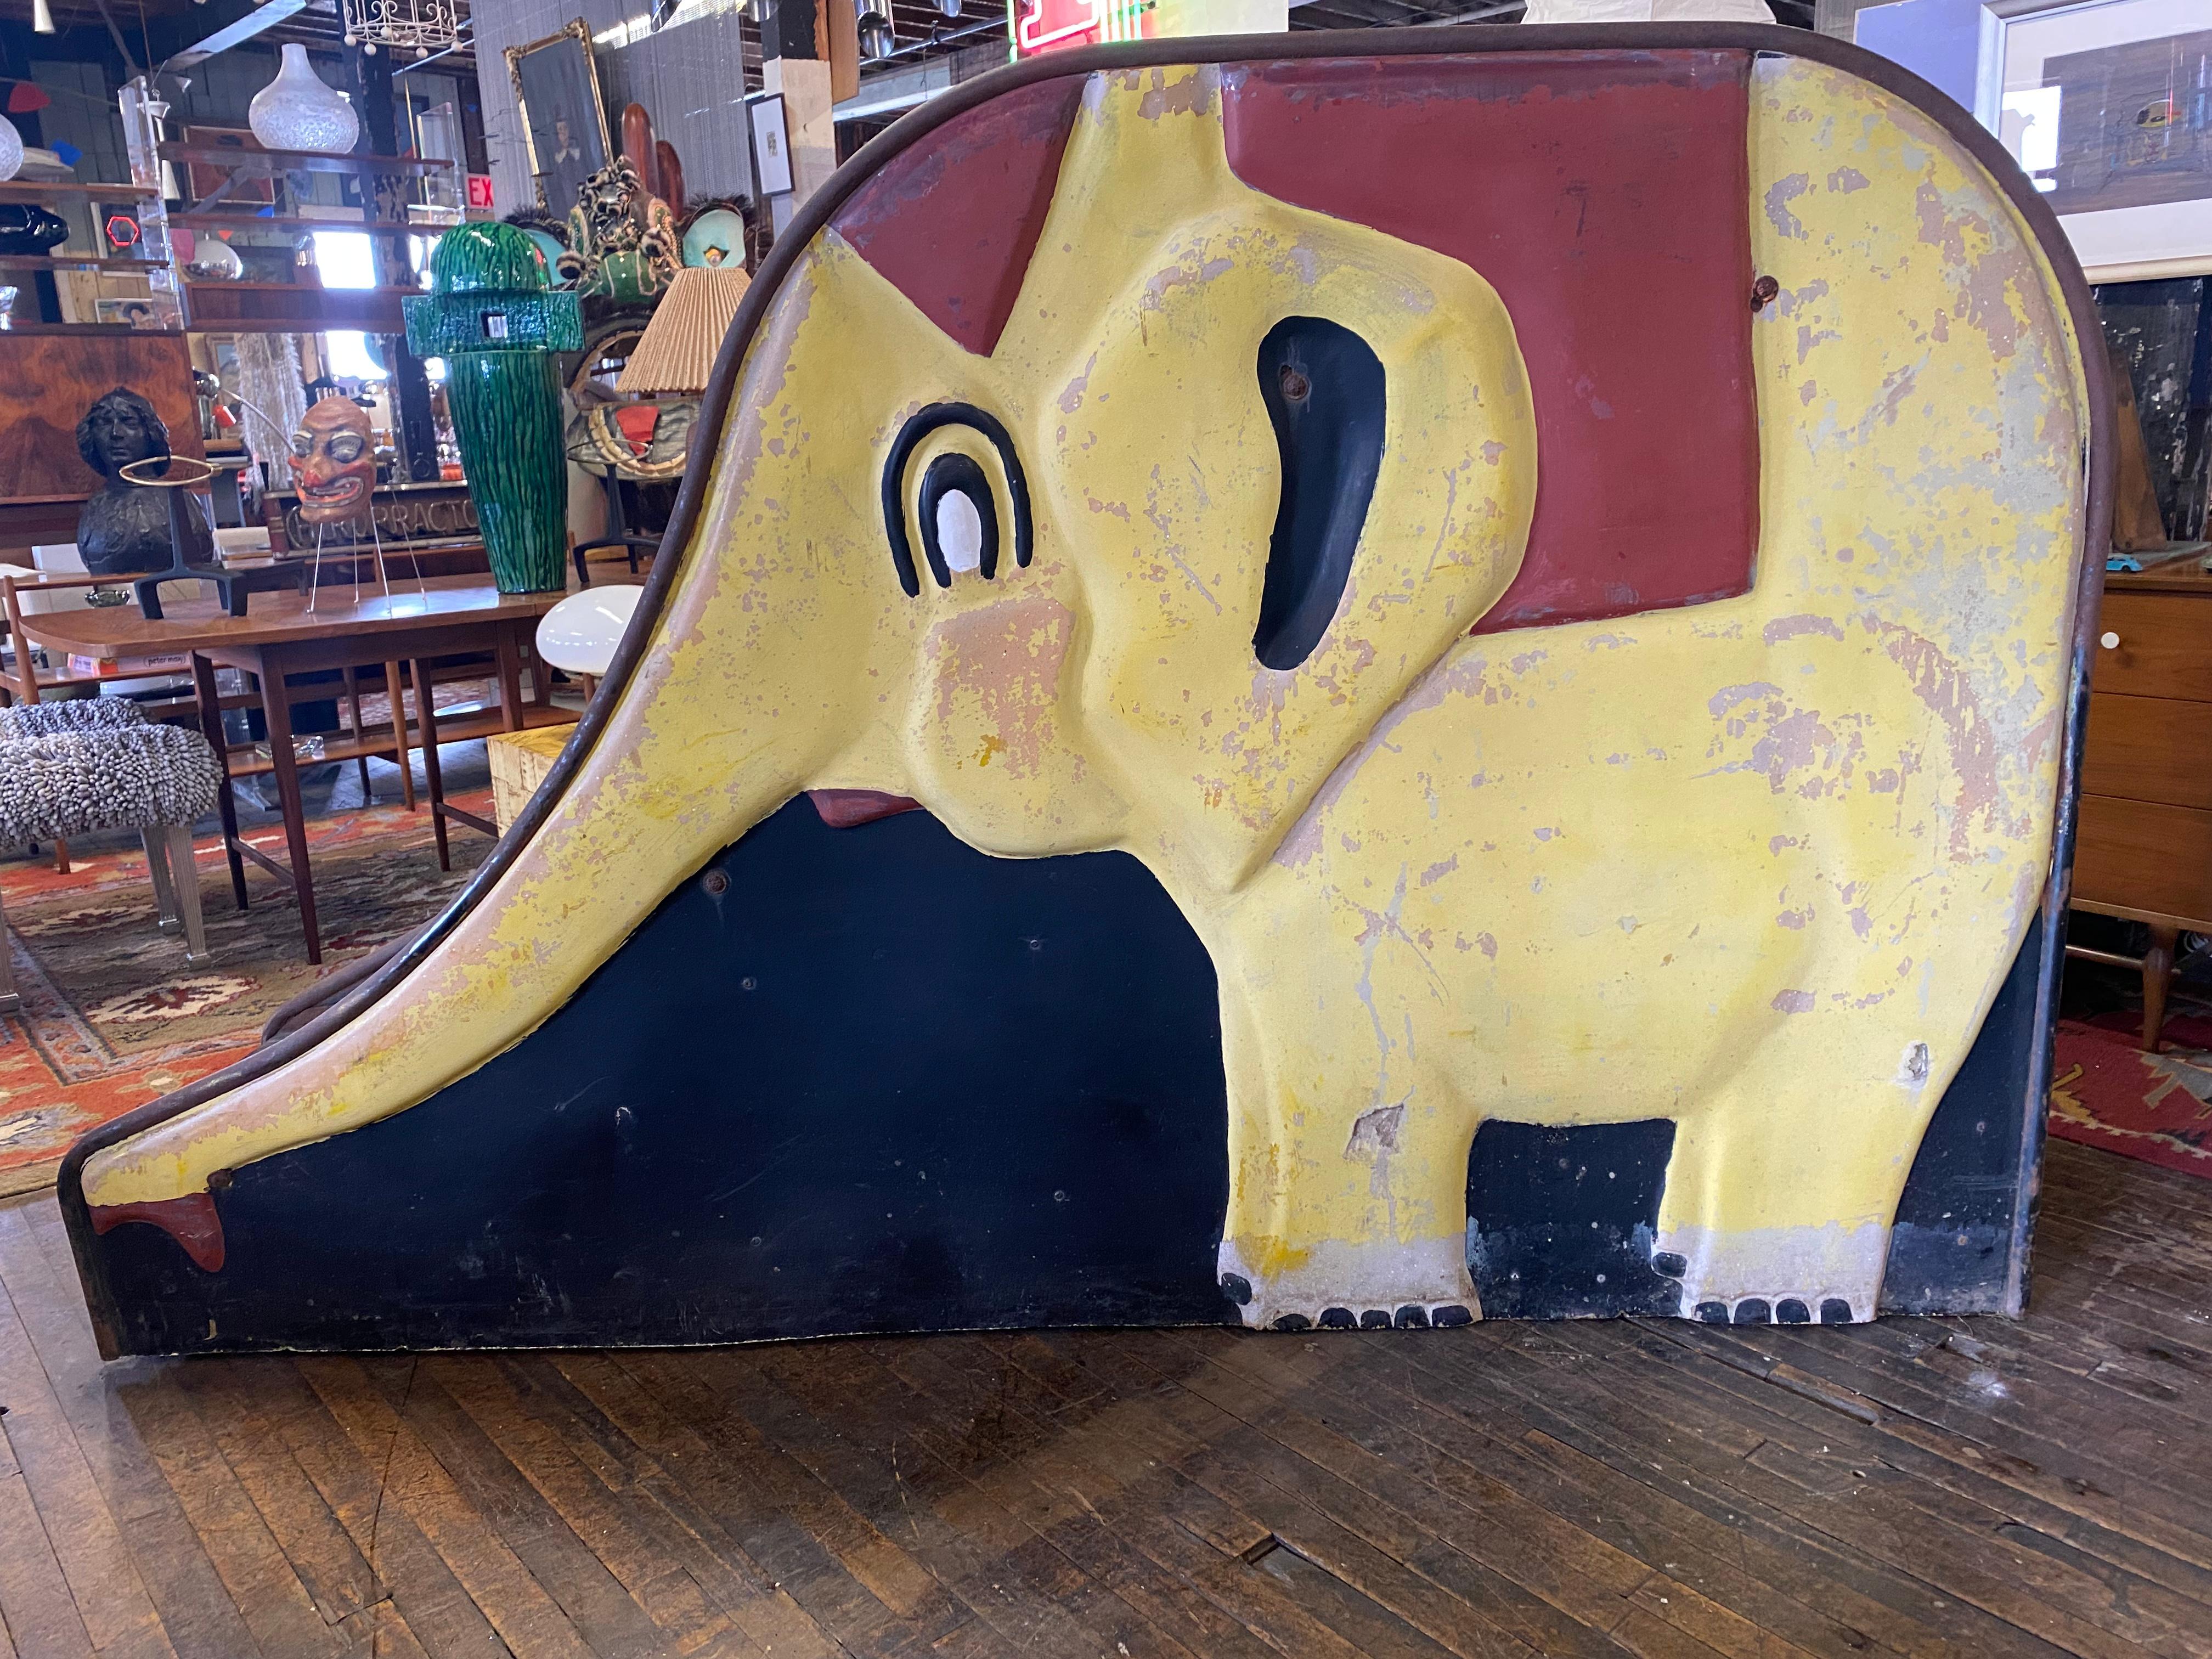 Vintage 1940's-1950's Elefant themed Spielplatz Rutsche. Gartenornament, Skulptur. Kinderrutsche für den Außenbereich mit beidseitig bemaltem Elefanten, Stahlstufen, Edelstahlrutsche. Altersgemäße Abnutzung und Patina, kleine Schäden an der Schale.